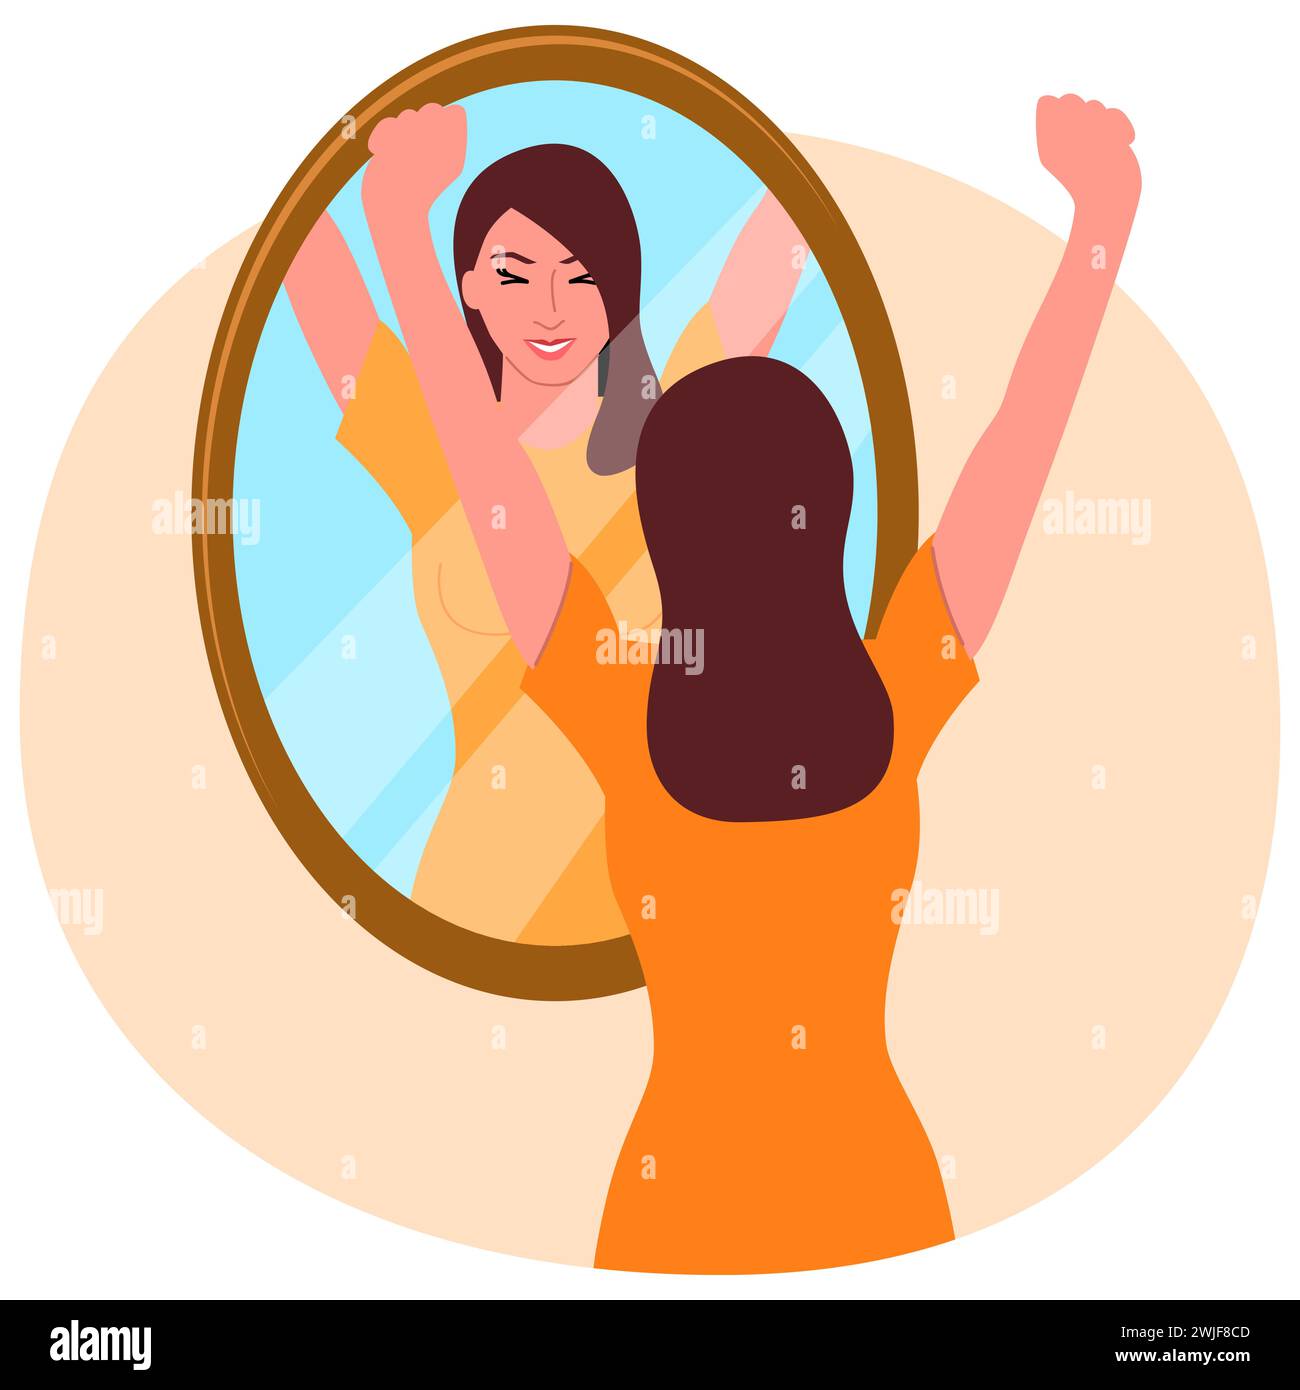 Clipkunst einer glücklichen jungen Frau, die in den Spiegel schaut, Selbstliebe, Manifestation, selbstbewusstes Konzept, Vektorillustration Stock Vektor